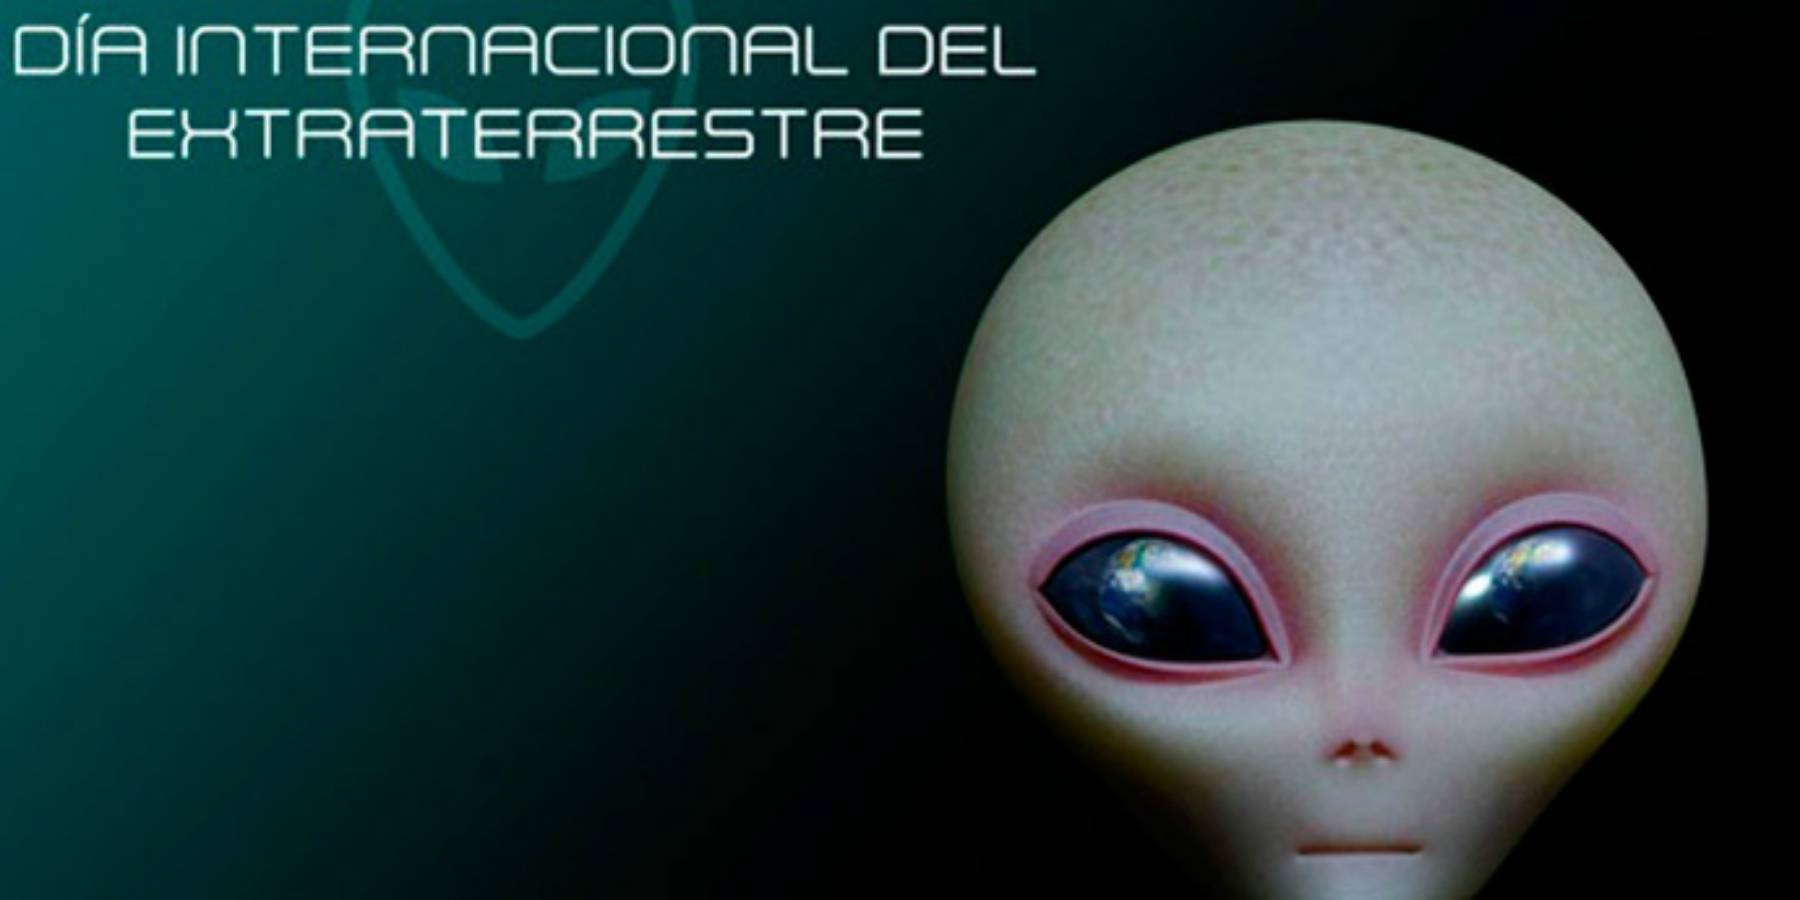 05 de Diciembre: Día Mundial del Extraterrestre